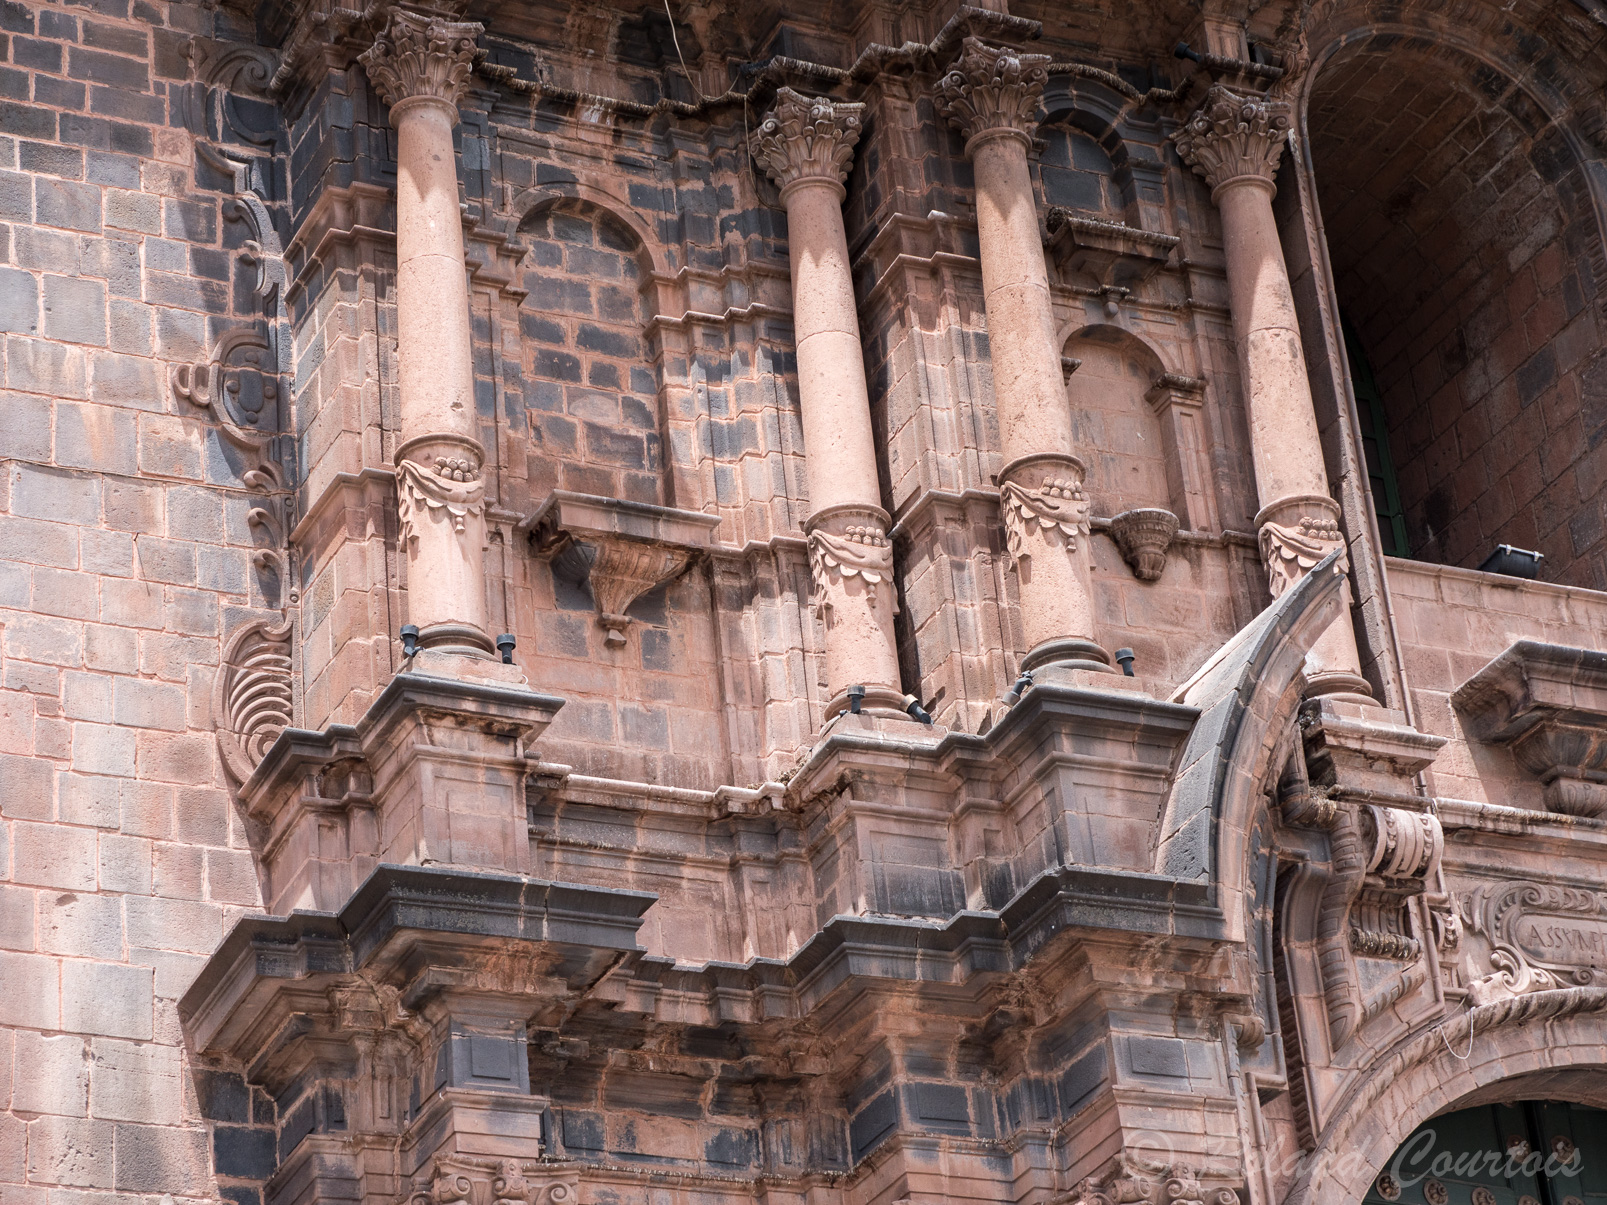 La façade renaissance de la cathédrale de Cuzco.